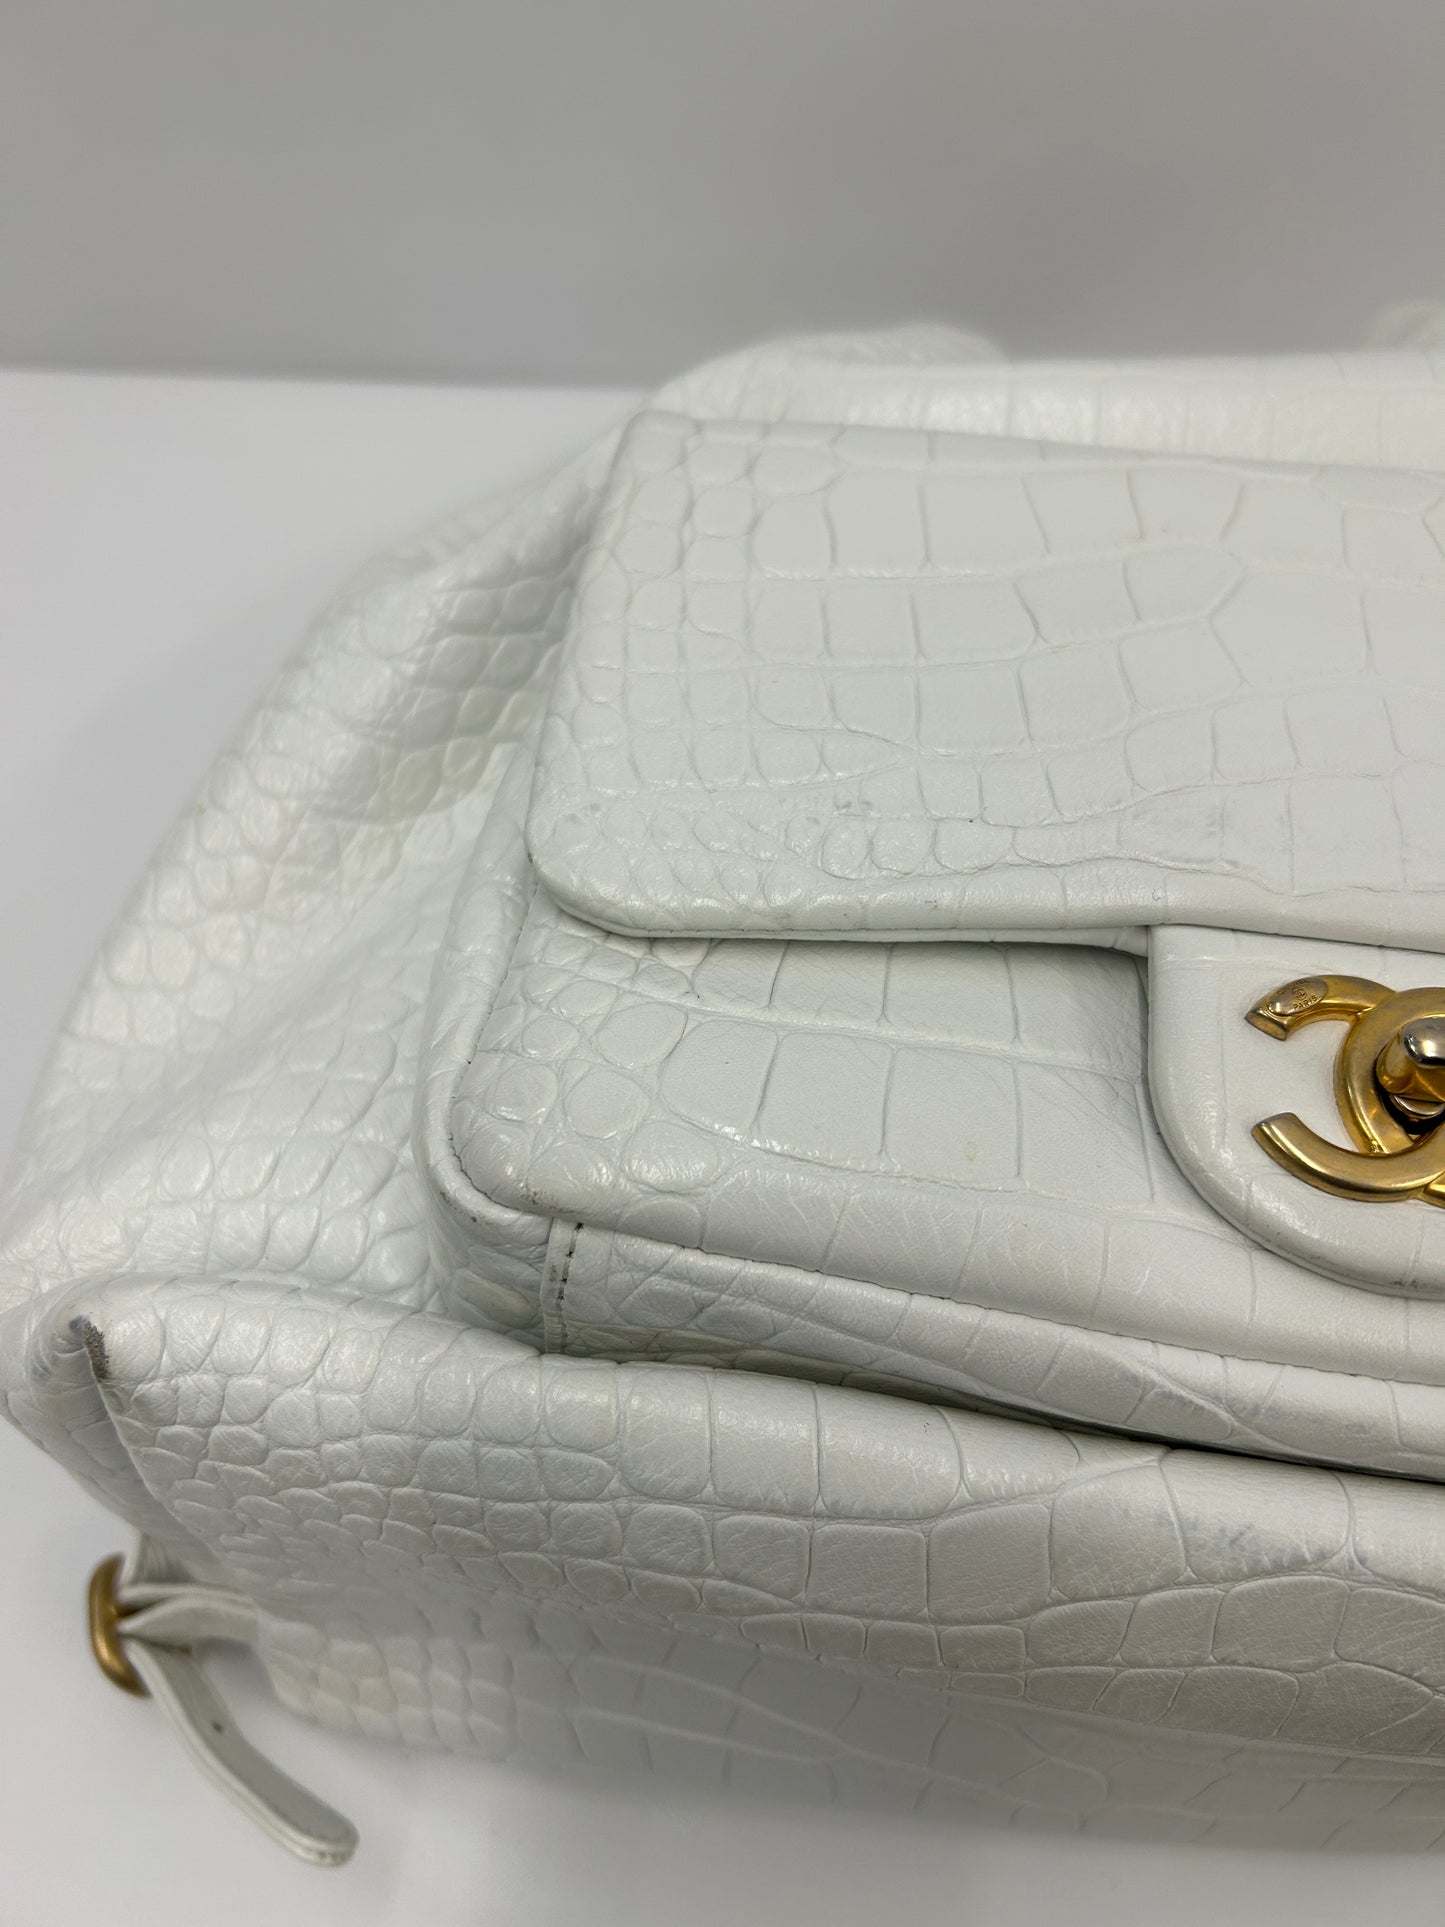 Weißer Lederrucksack von Chanel